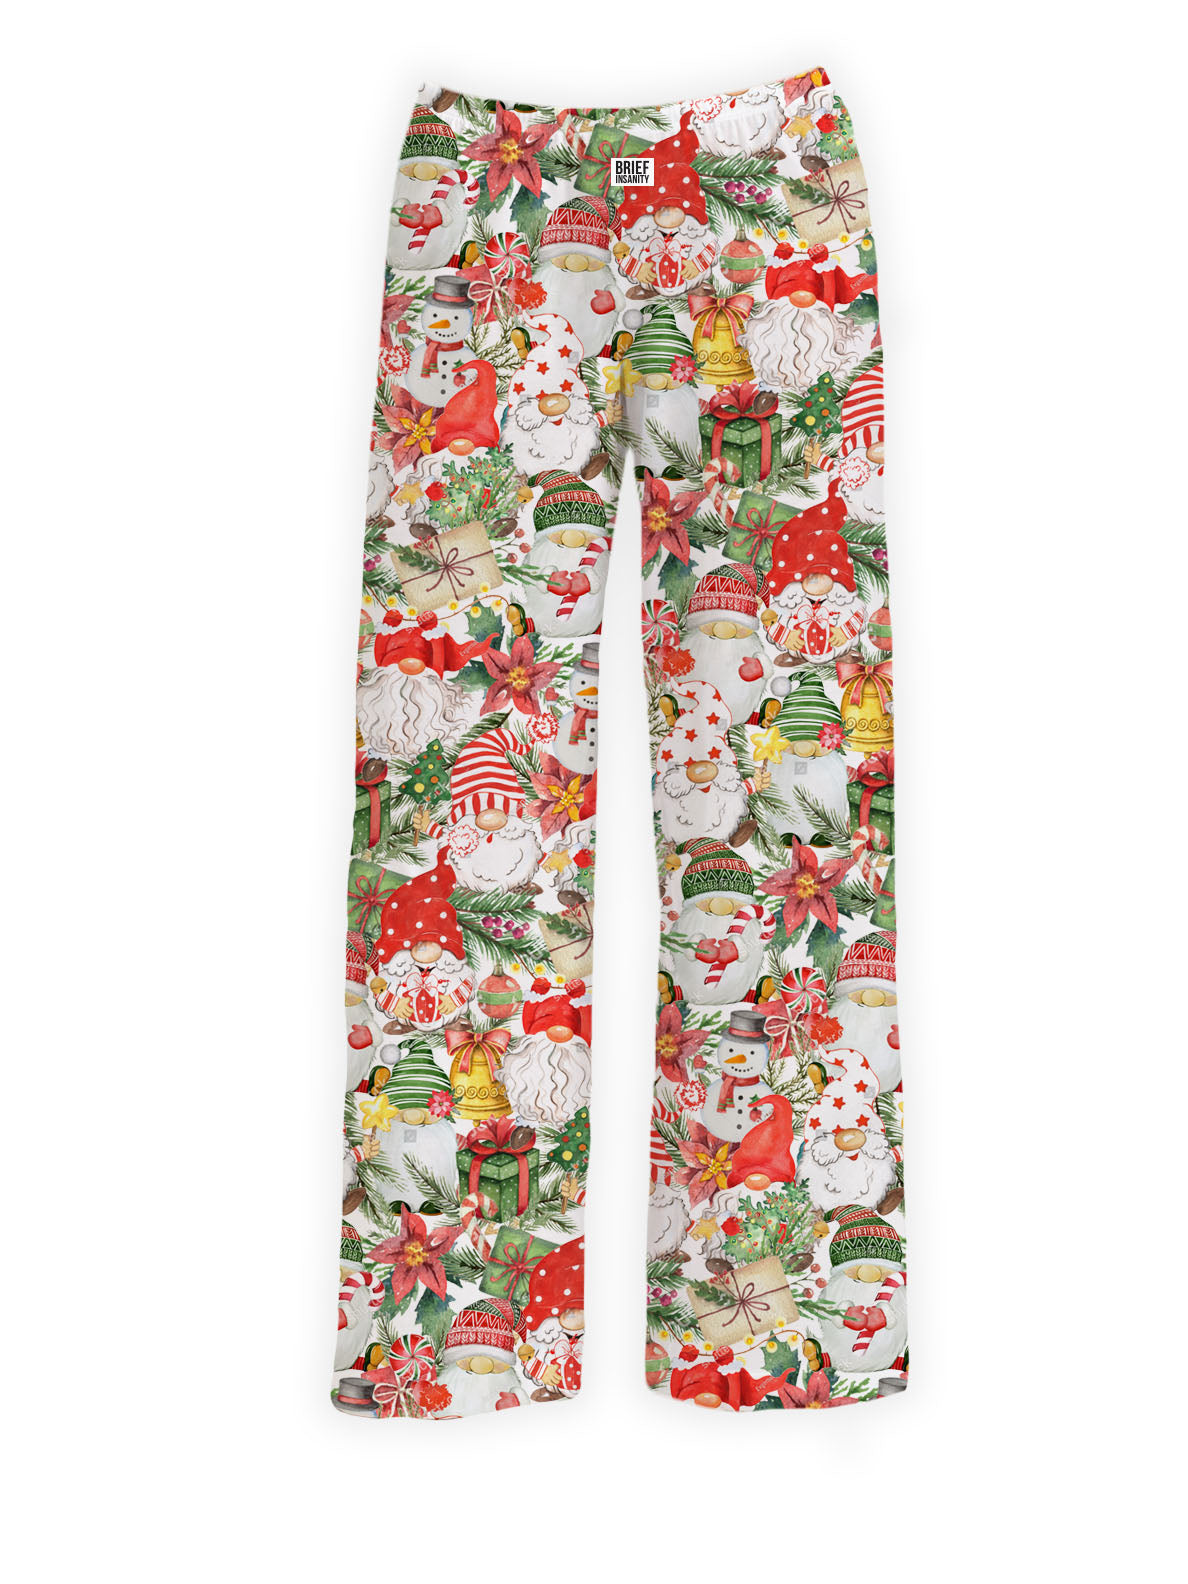 BRIEF INSANITY Holiday Gnomes Pajama Pants